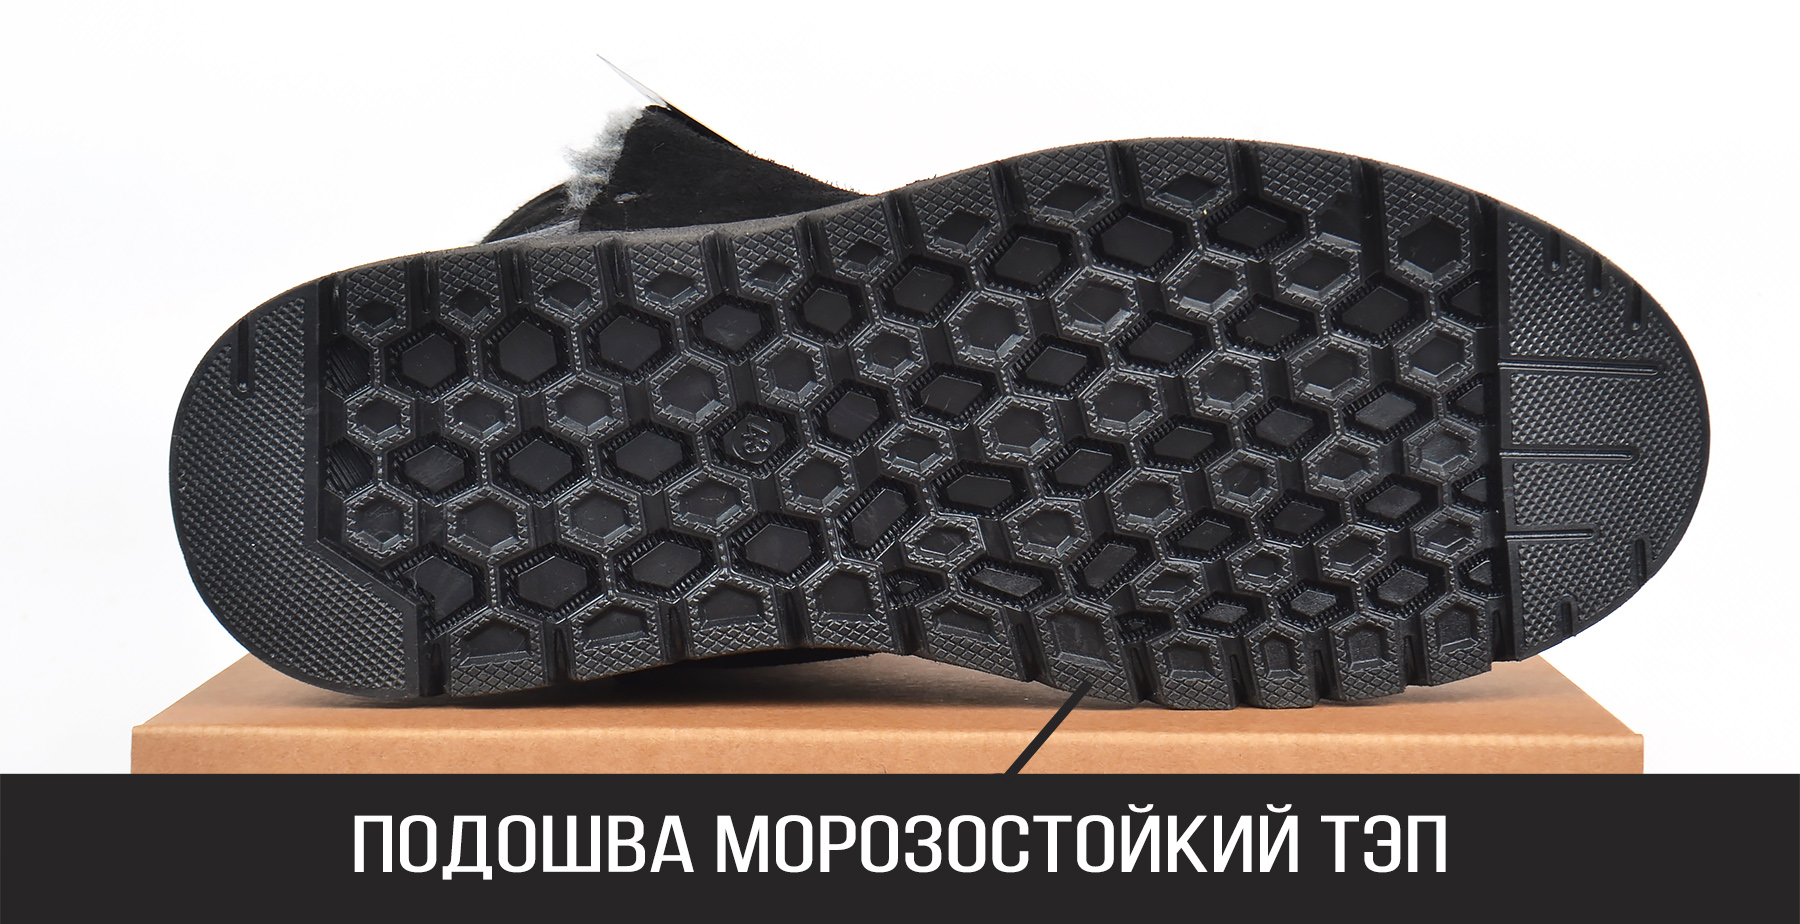 не скользкая подошва кожаных зимних мужских угги с натуральной шерстью Richi Black купить мужские сапоги в Украине 